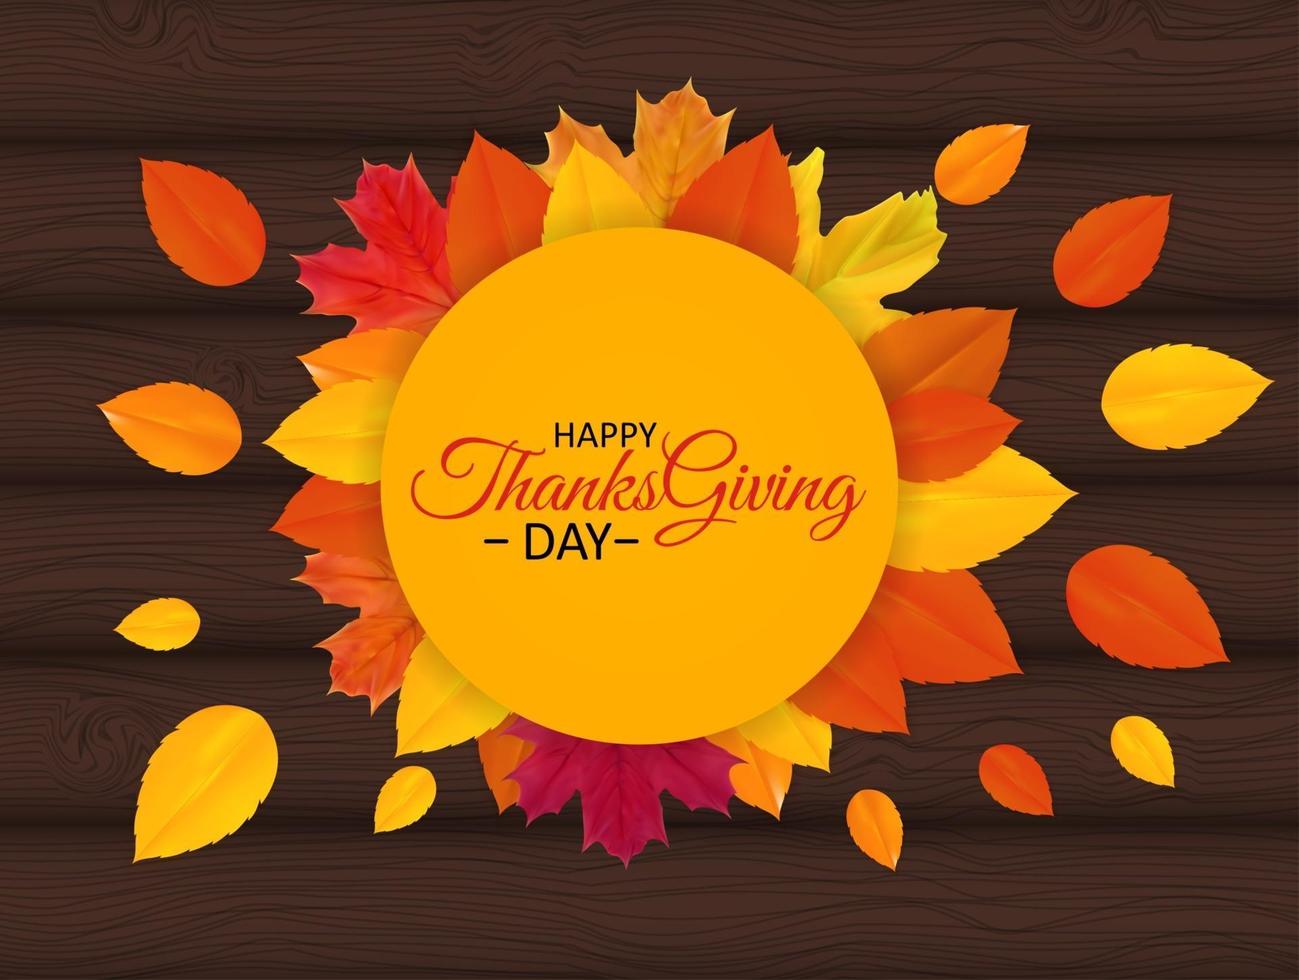 Happy Thanksgiving Day Hintergrund mit glänzenden Herbst natürlichen Blättern. Vektor-Illustration vektor